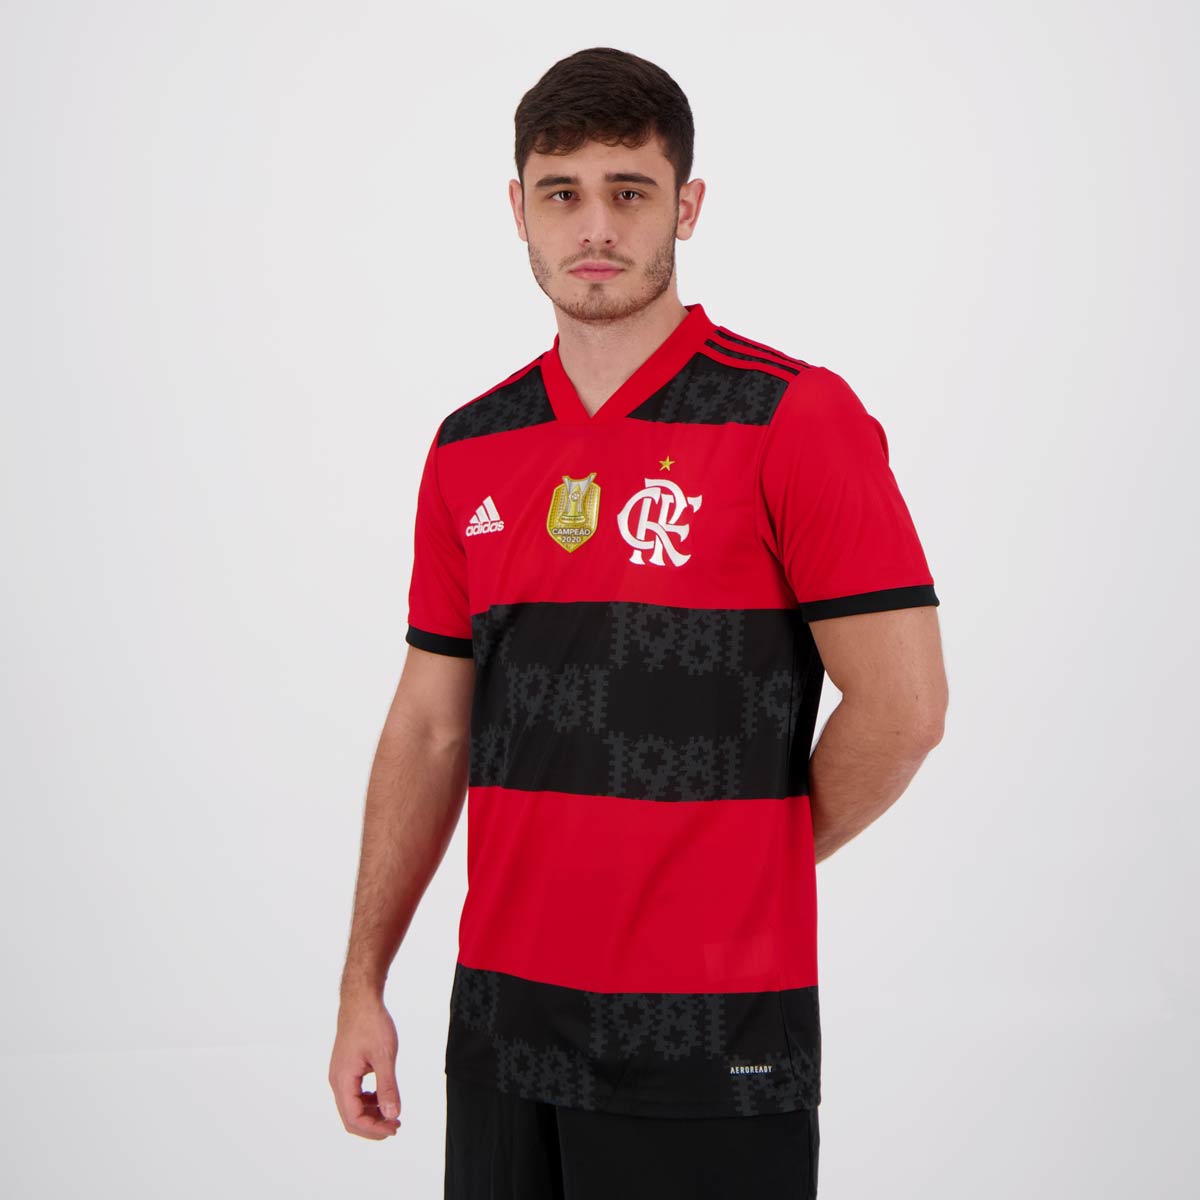 vesícula biliar Desfavorable engañar Adidas Flamengo 2021 Home 2020 Brazilian Champion Jersey - FutFanatics